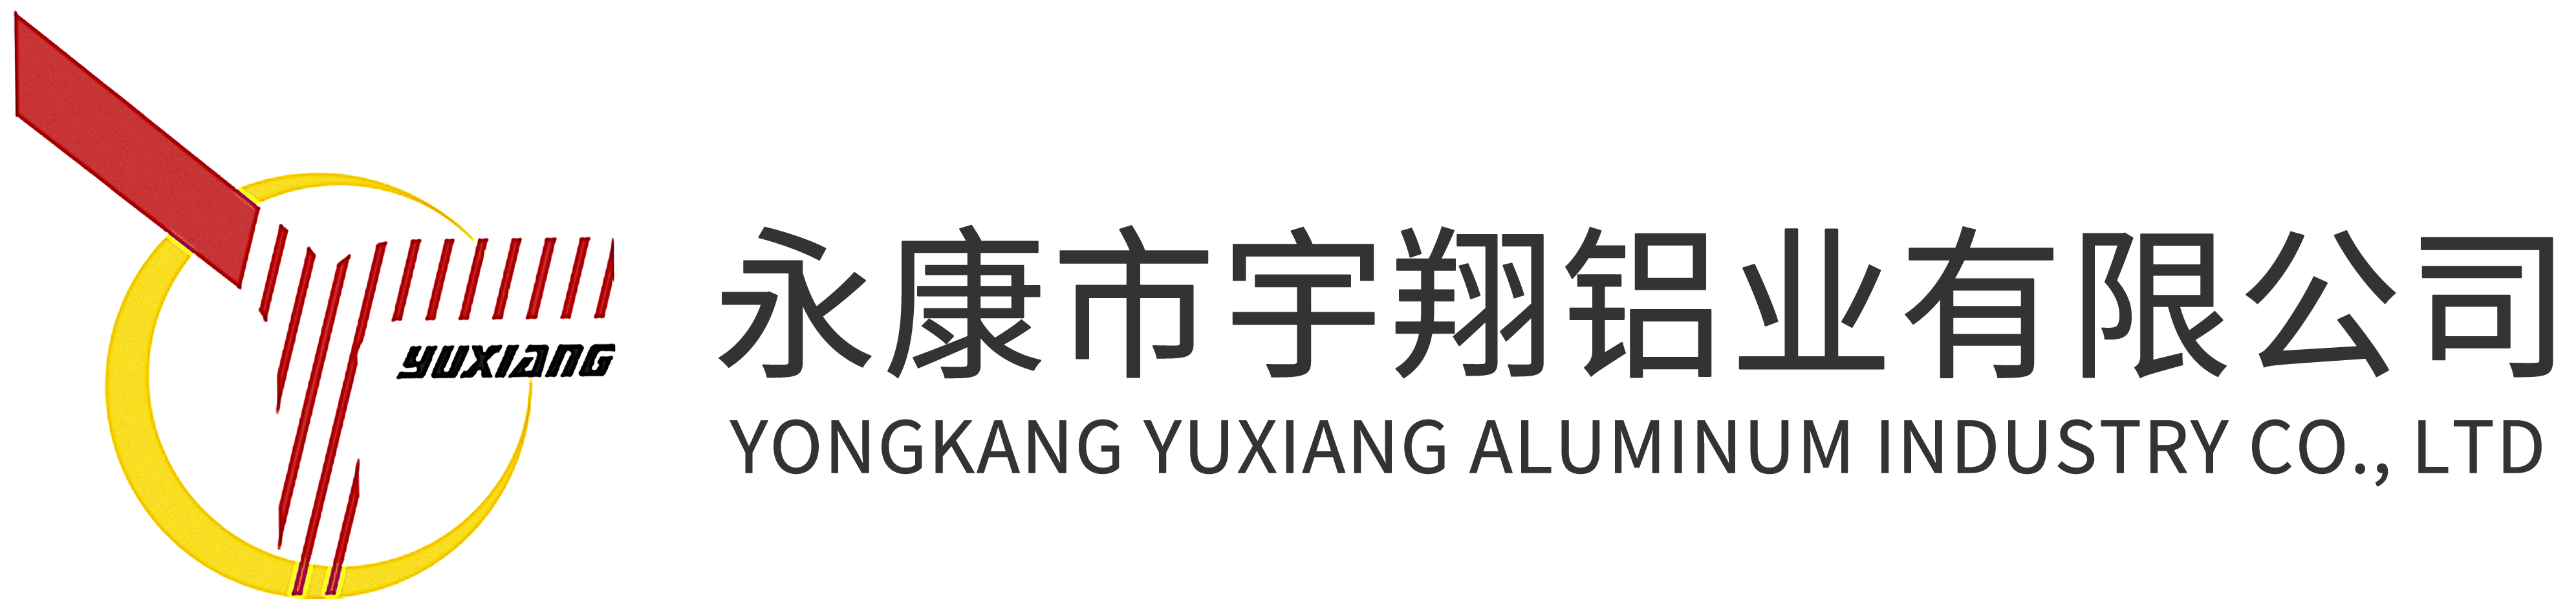 Yongkang Yuxiang Aluminum Industry Co., Ltd